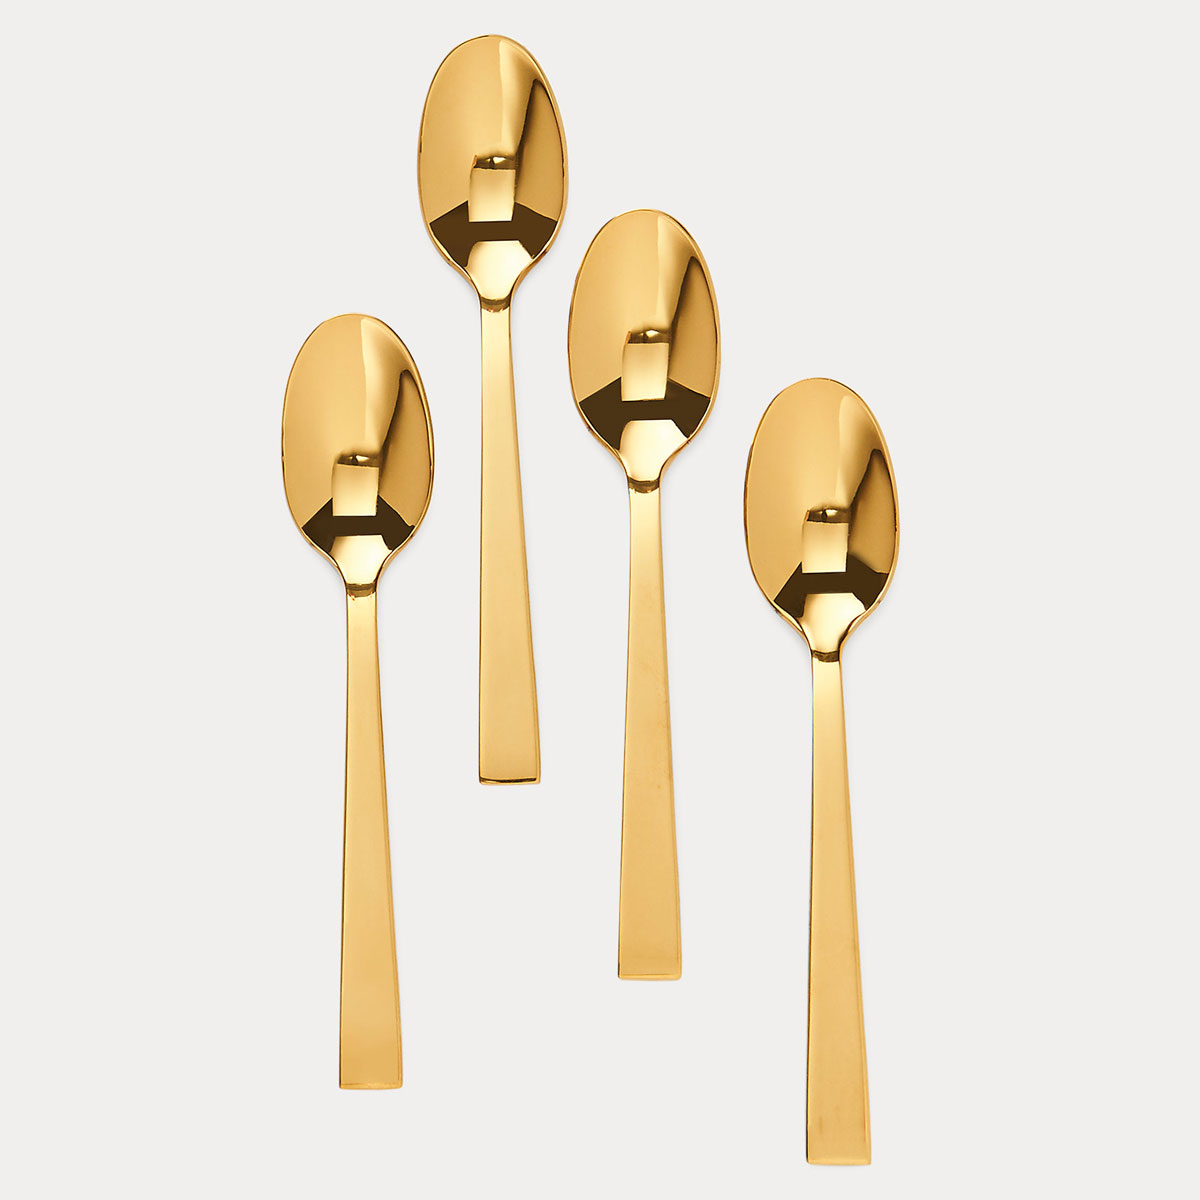 Ralph Lauren Academy Flatware Set of 4 Demitasse Spoons, Gold